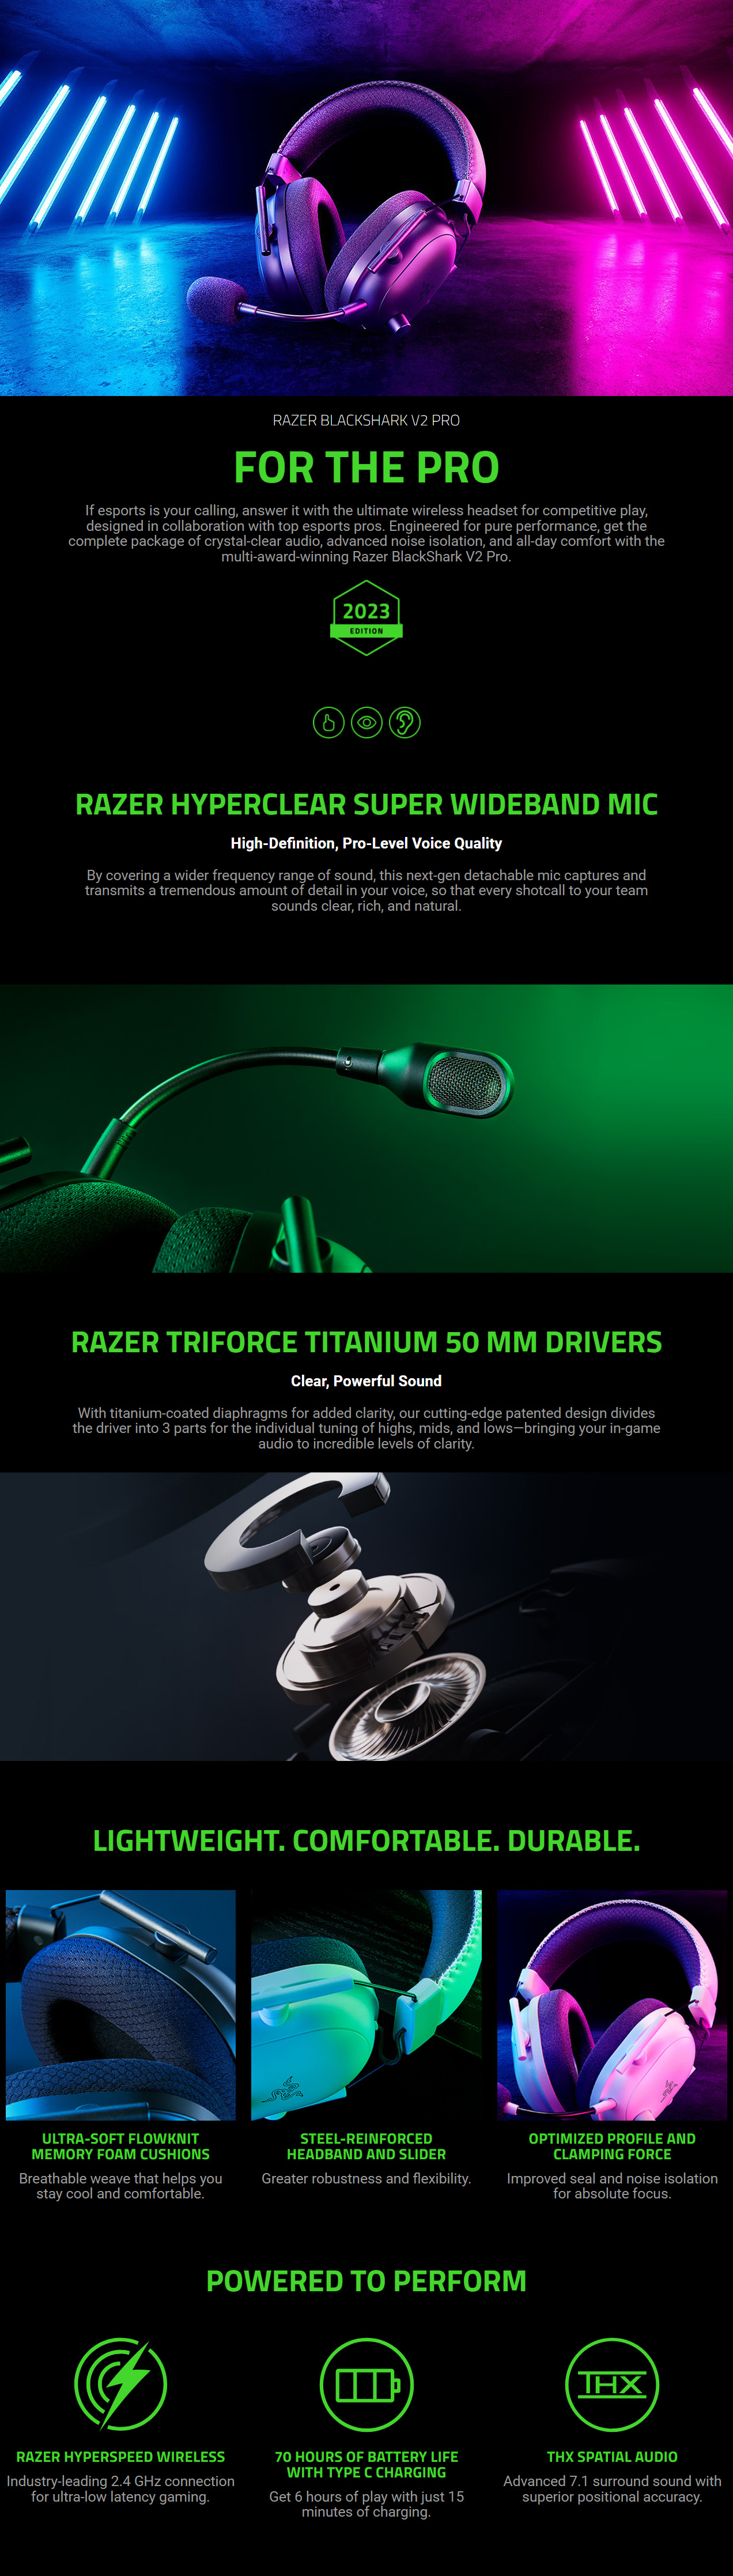 Headphones-Razer-BlackShark-V2-Pro-2023-Wireless-Gaming-Headset-1